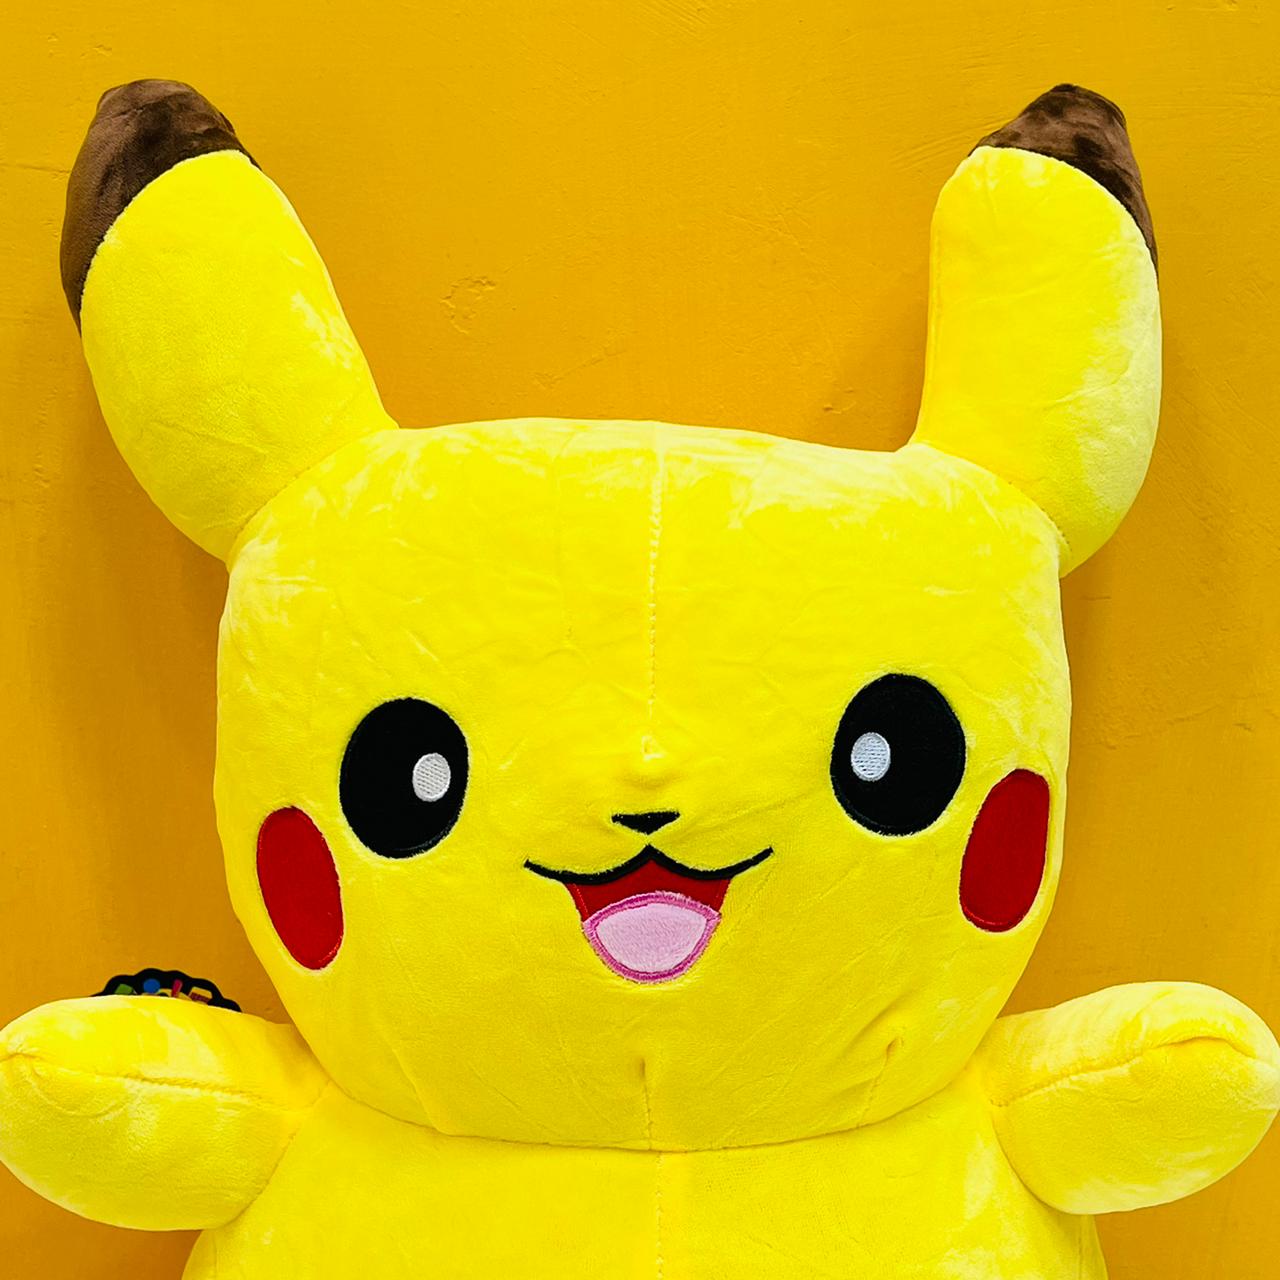 12* Inches Premium Quality Stuff Pokemon(Pikachu)